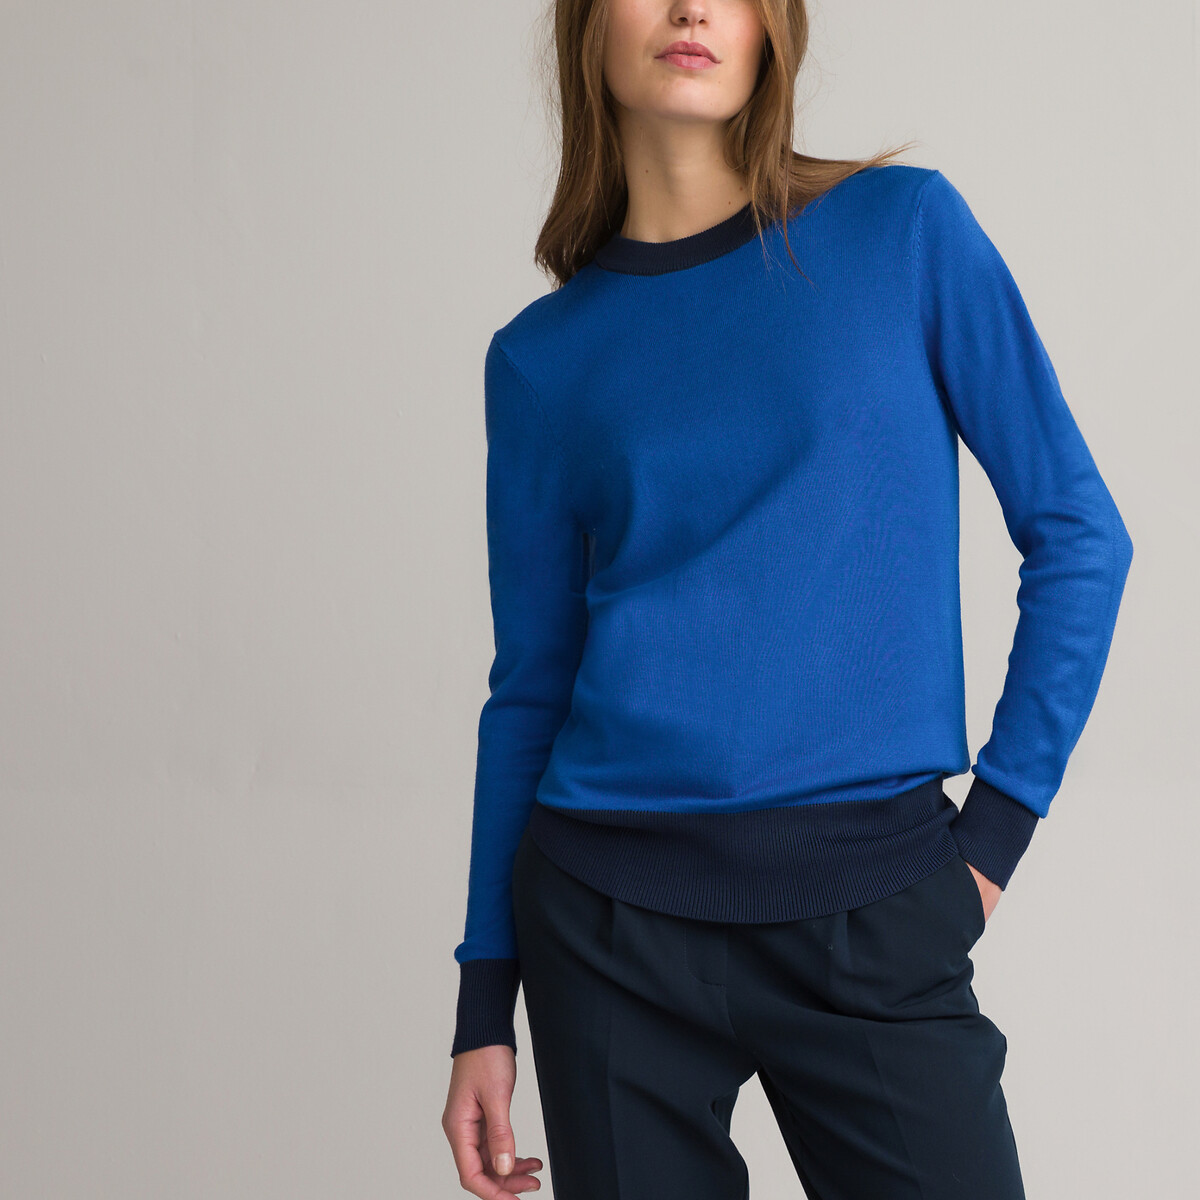 Пуловер Двухцветный с круглым вырезом из тонкого трикотажа L синий